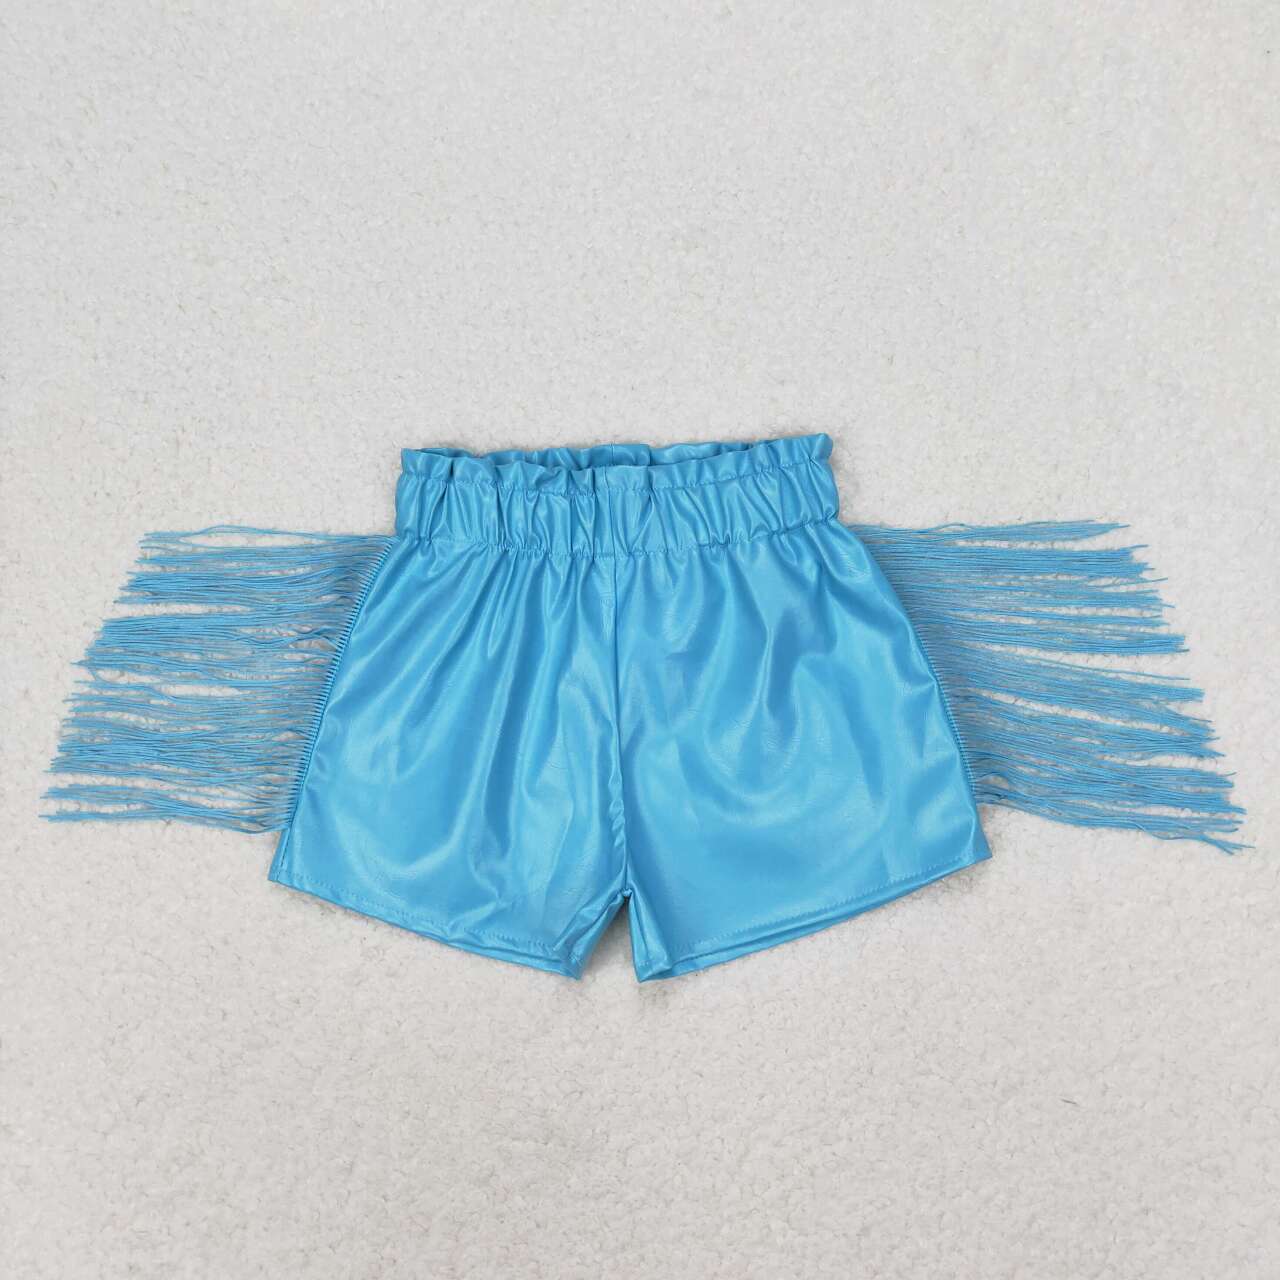 SS0241 Blue shiny leather fringed shorts